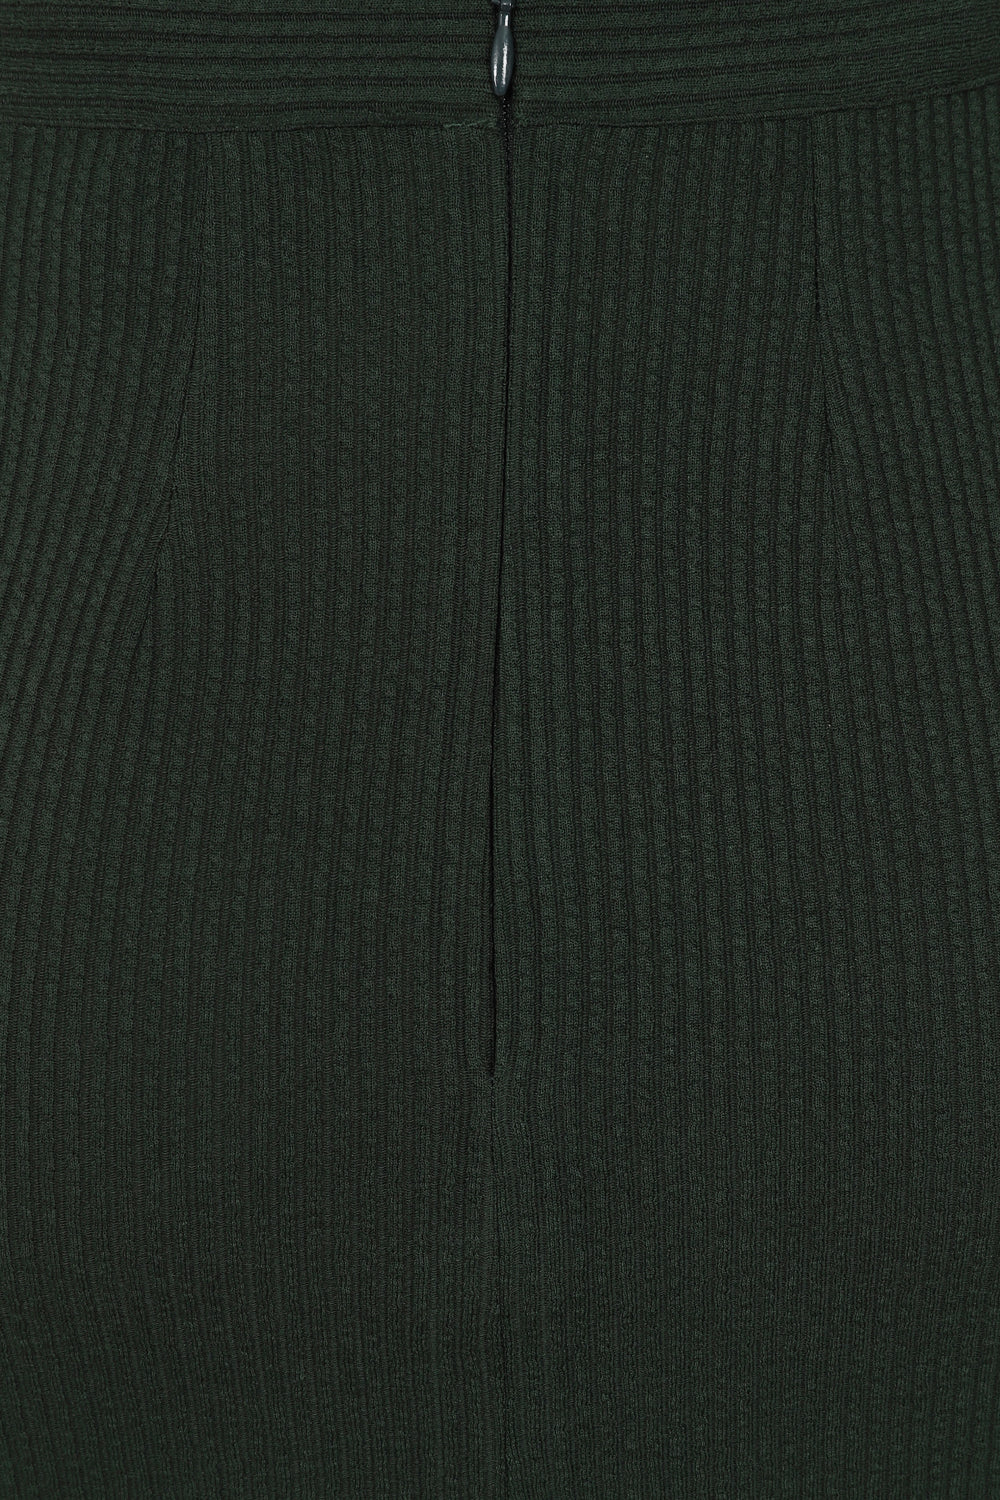 Sally Knitted Skirt grün